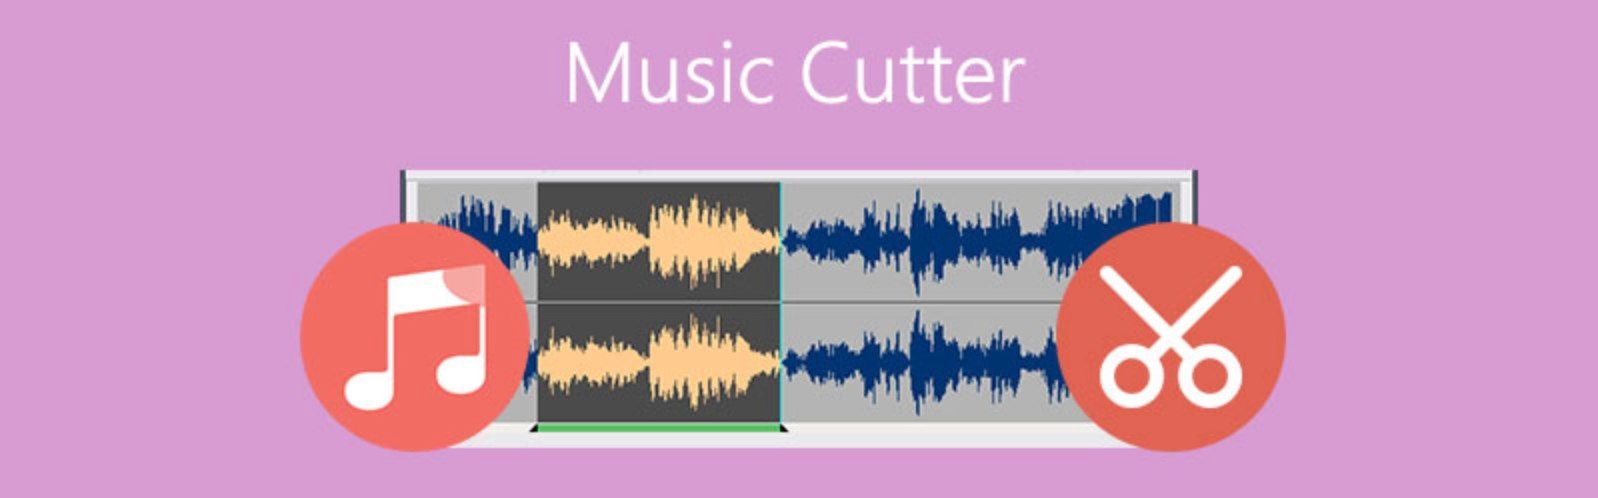 Audio Merger, Splitter, Joiner